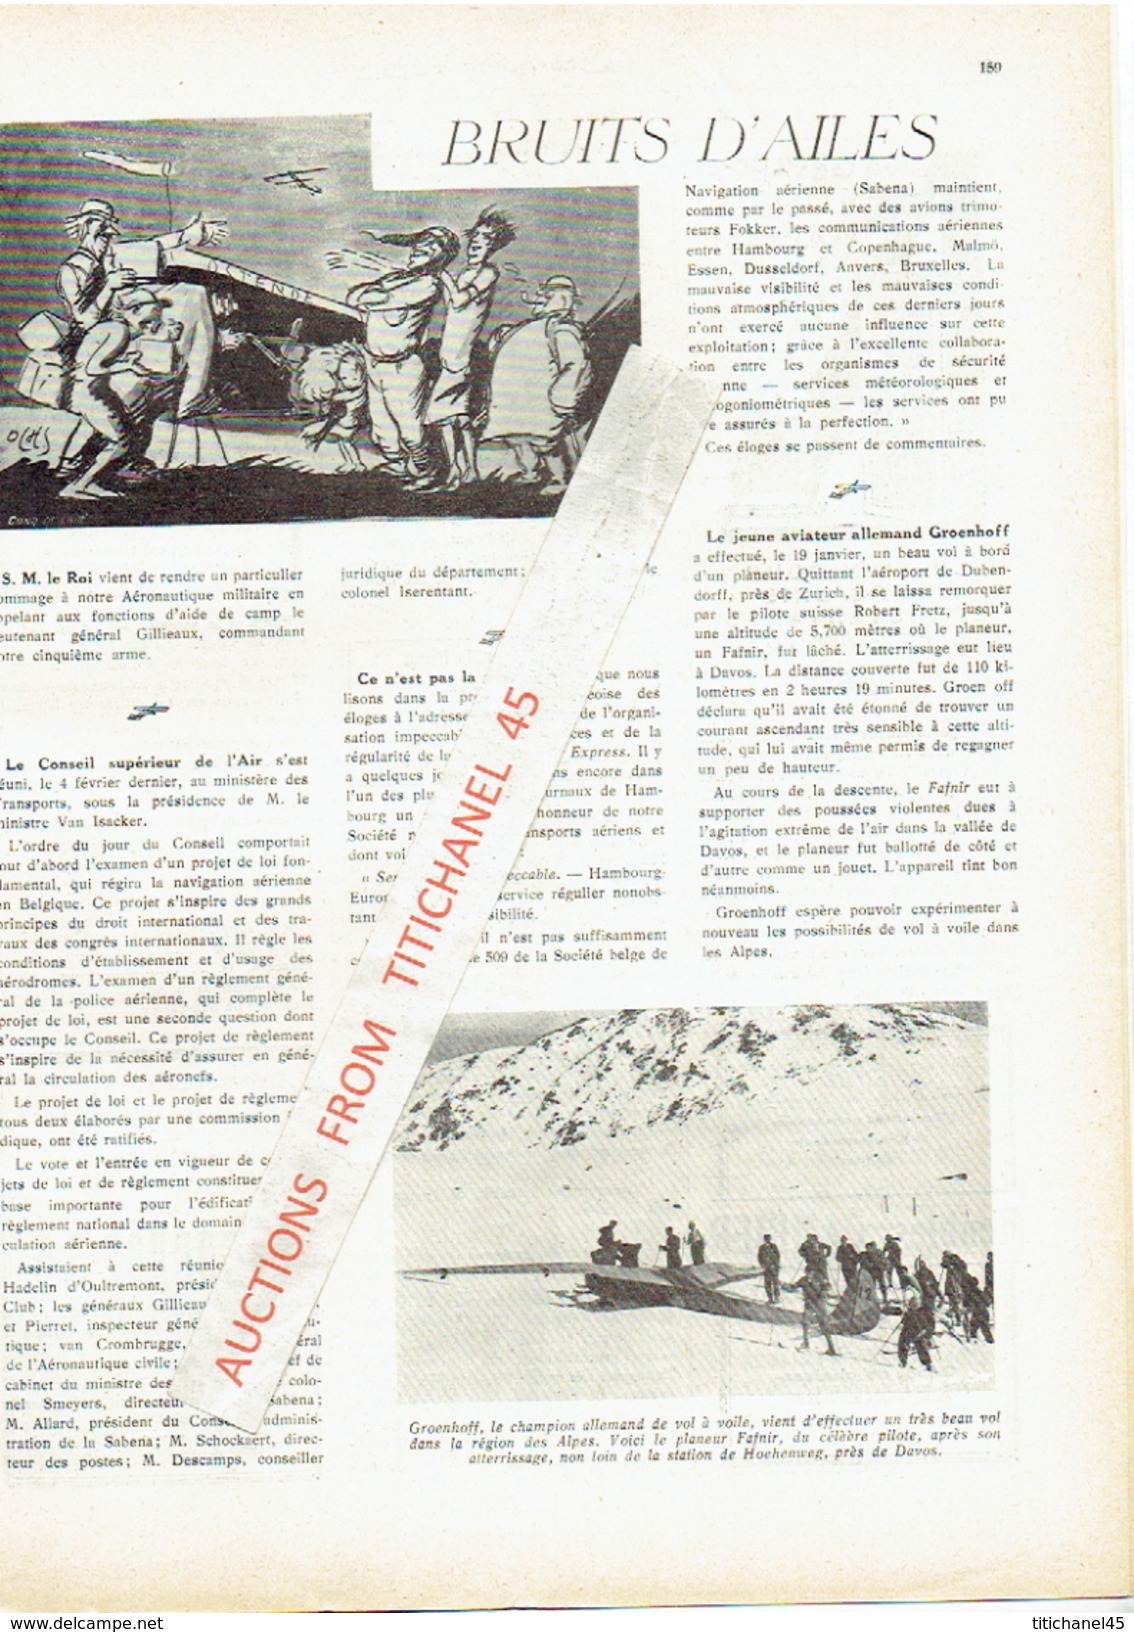 LA CONQUETE DE L'AIR 1932 n°3 -SABENA-CONGO-MINERVA-HISPANO-SUIZA-SABCA-MUSTERLE-FORD-CHENARD-WALCKER-CITROEN-WILLYS